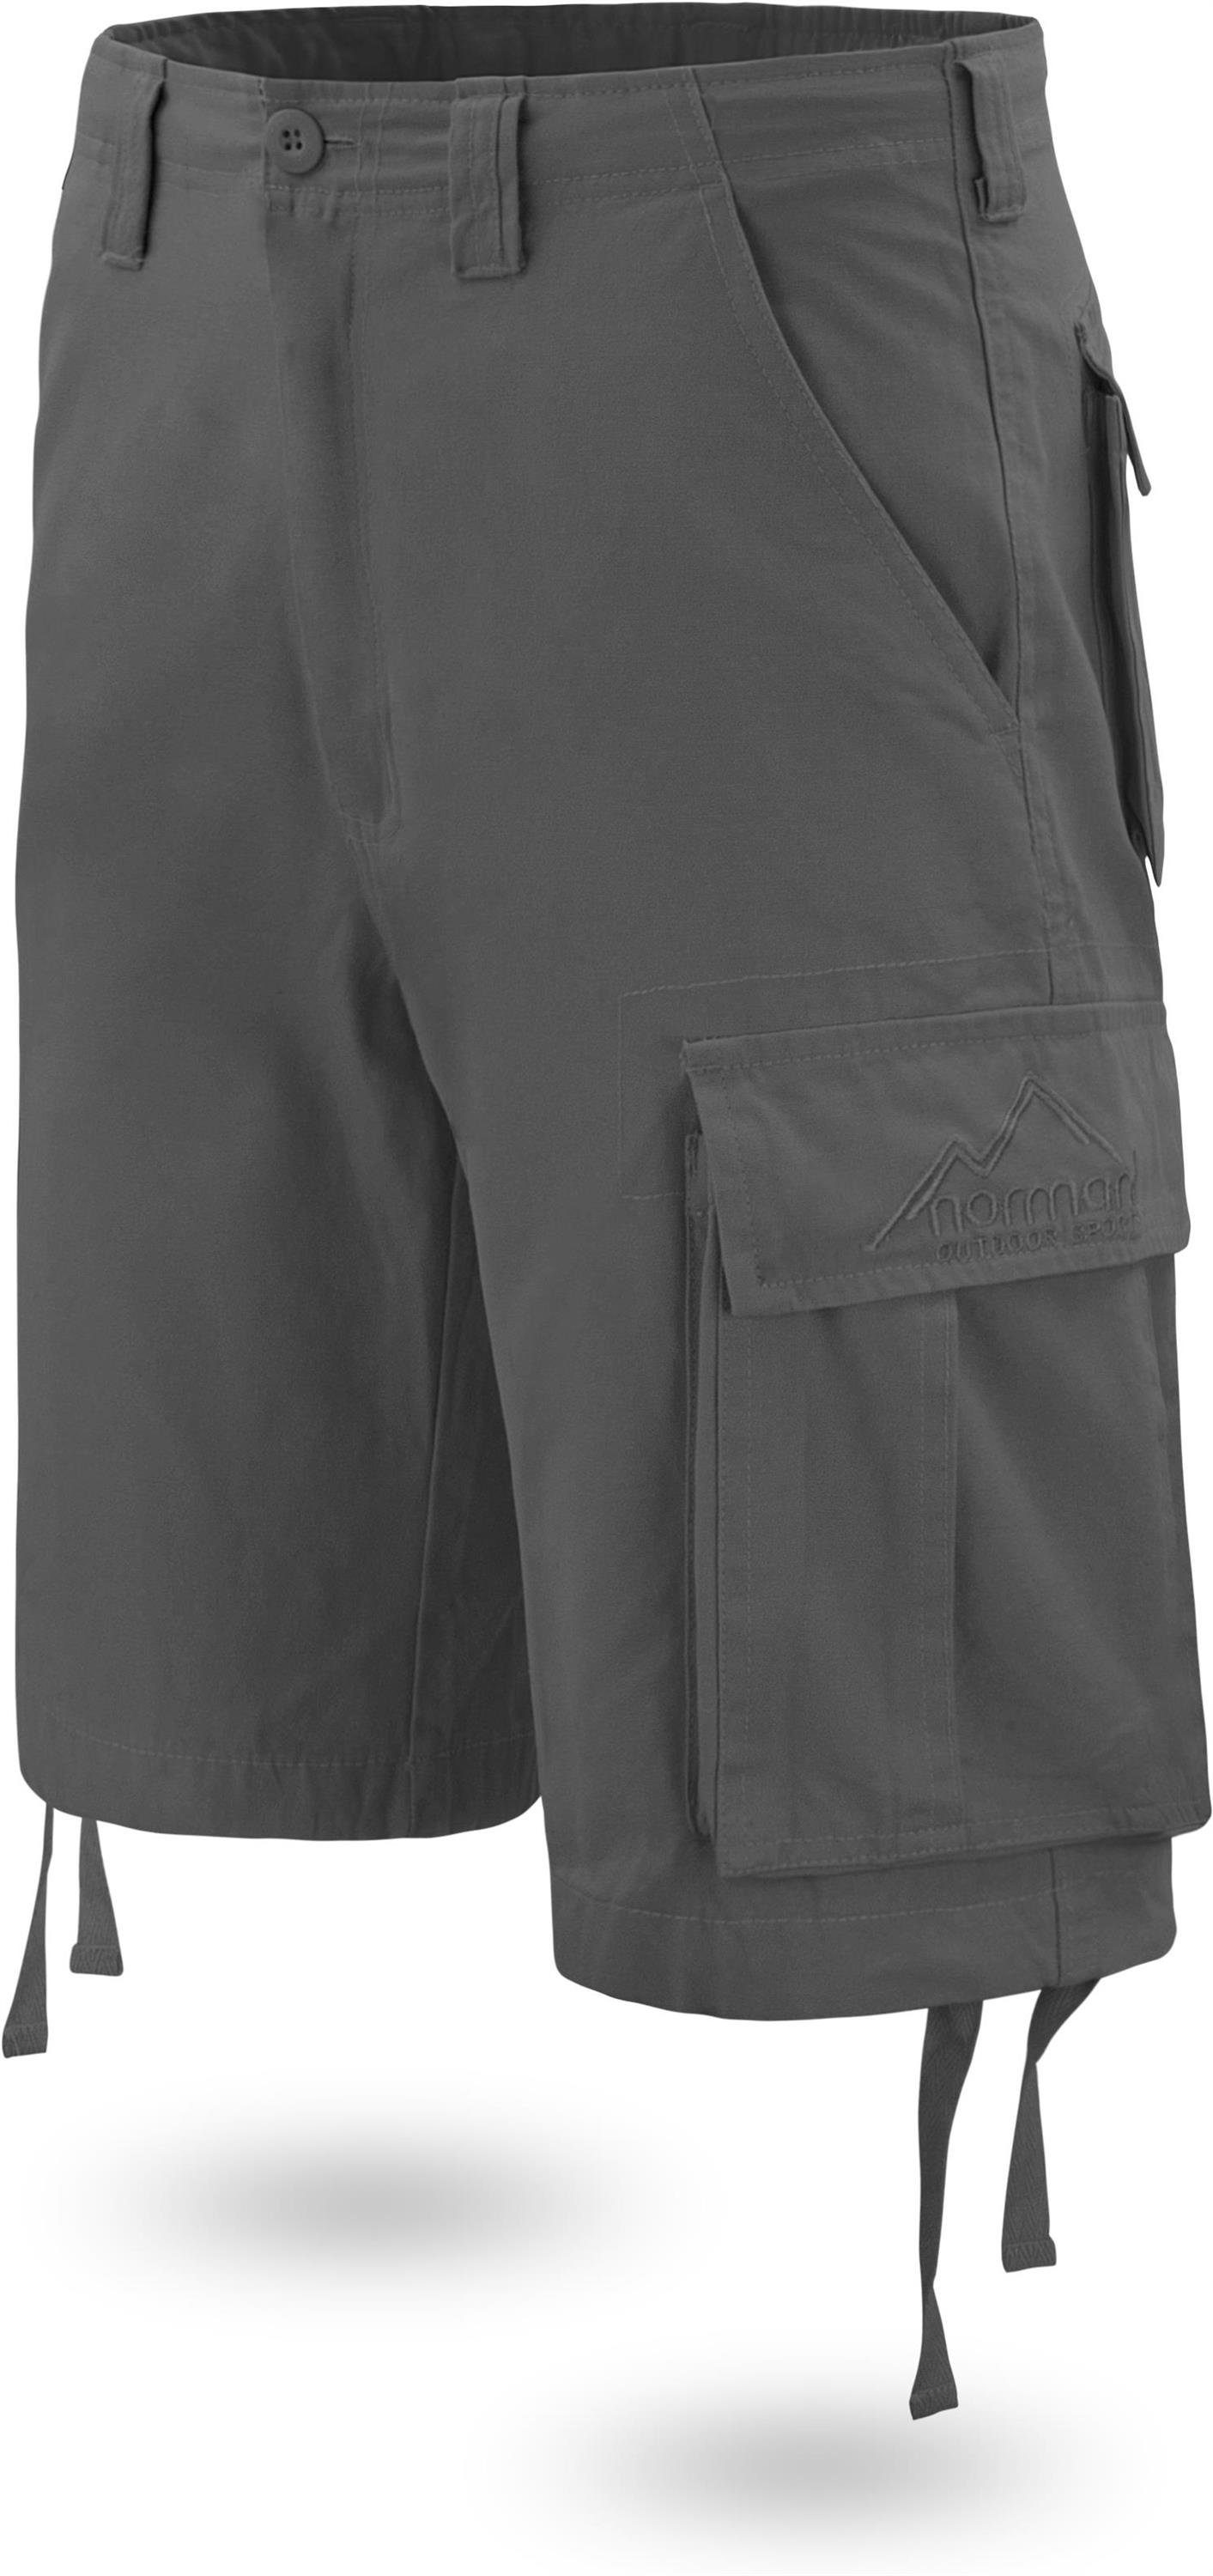 normani Bermudas Herren Shorts Kalahari Sommershorts Vintage Shorts Bio-Baumwolle kurze Anthrazit Cargotaschen 100% mit aus